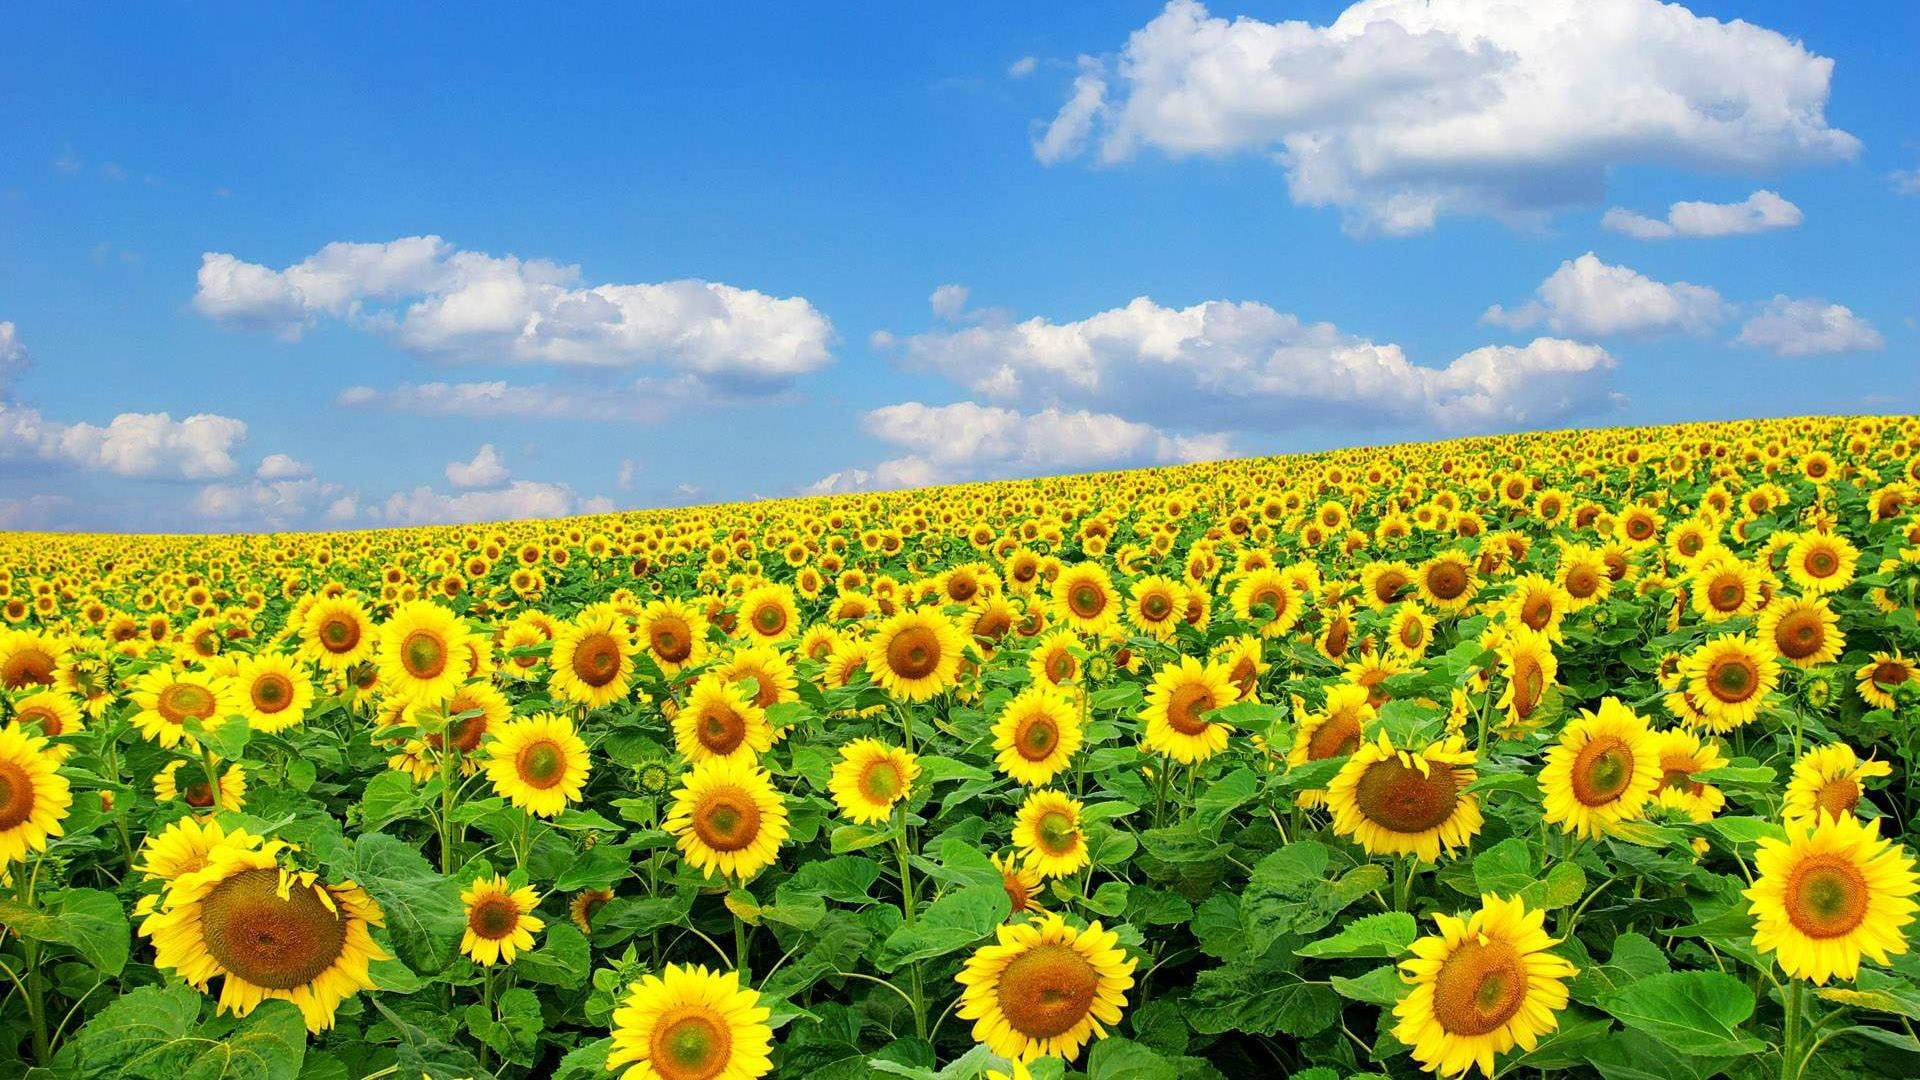 Sunflower Field In Spring Season Wallpaper